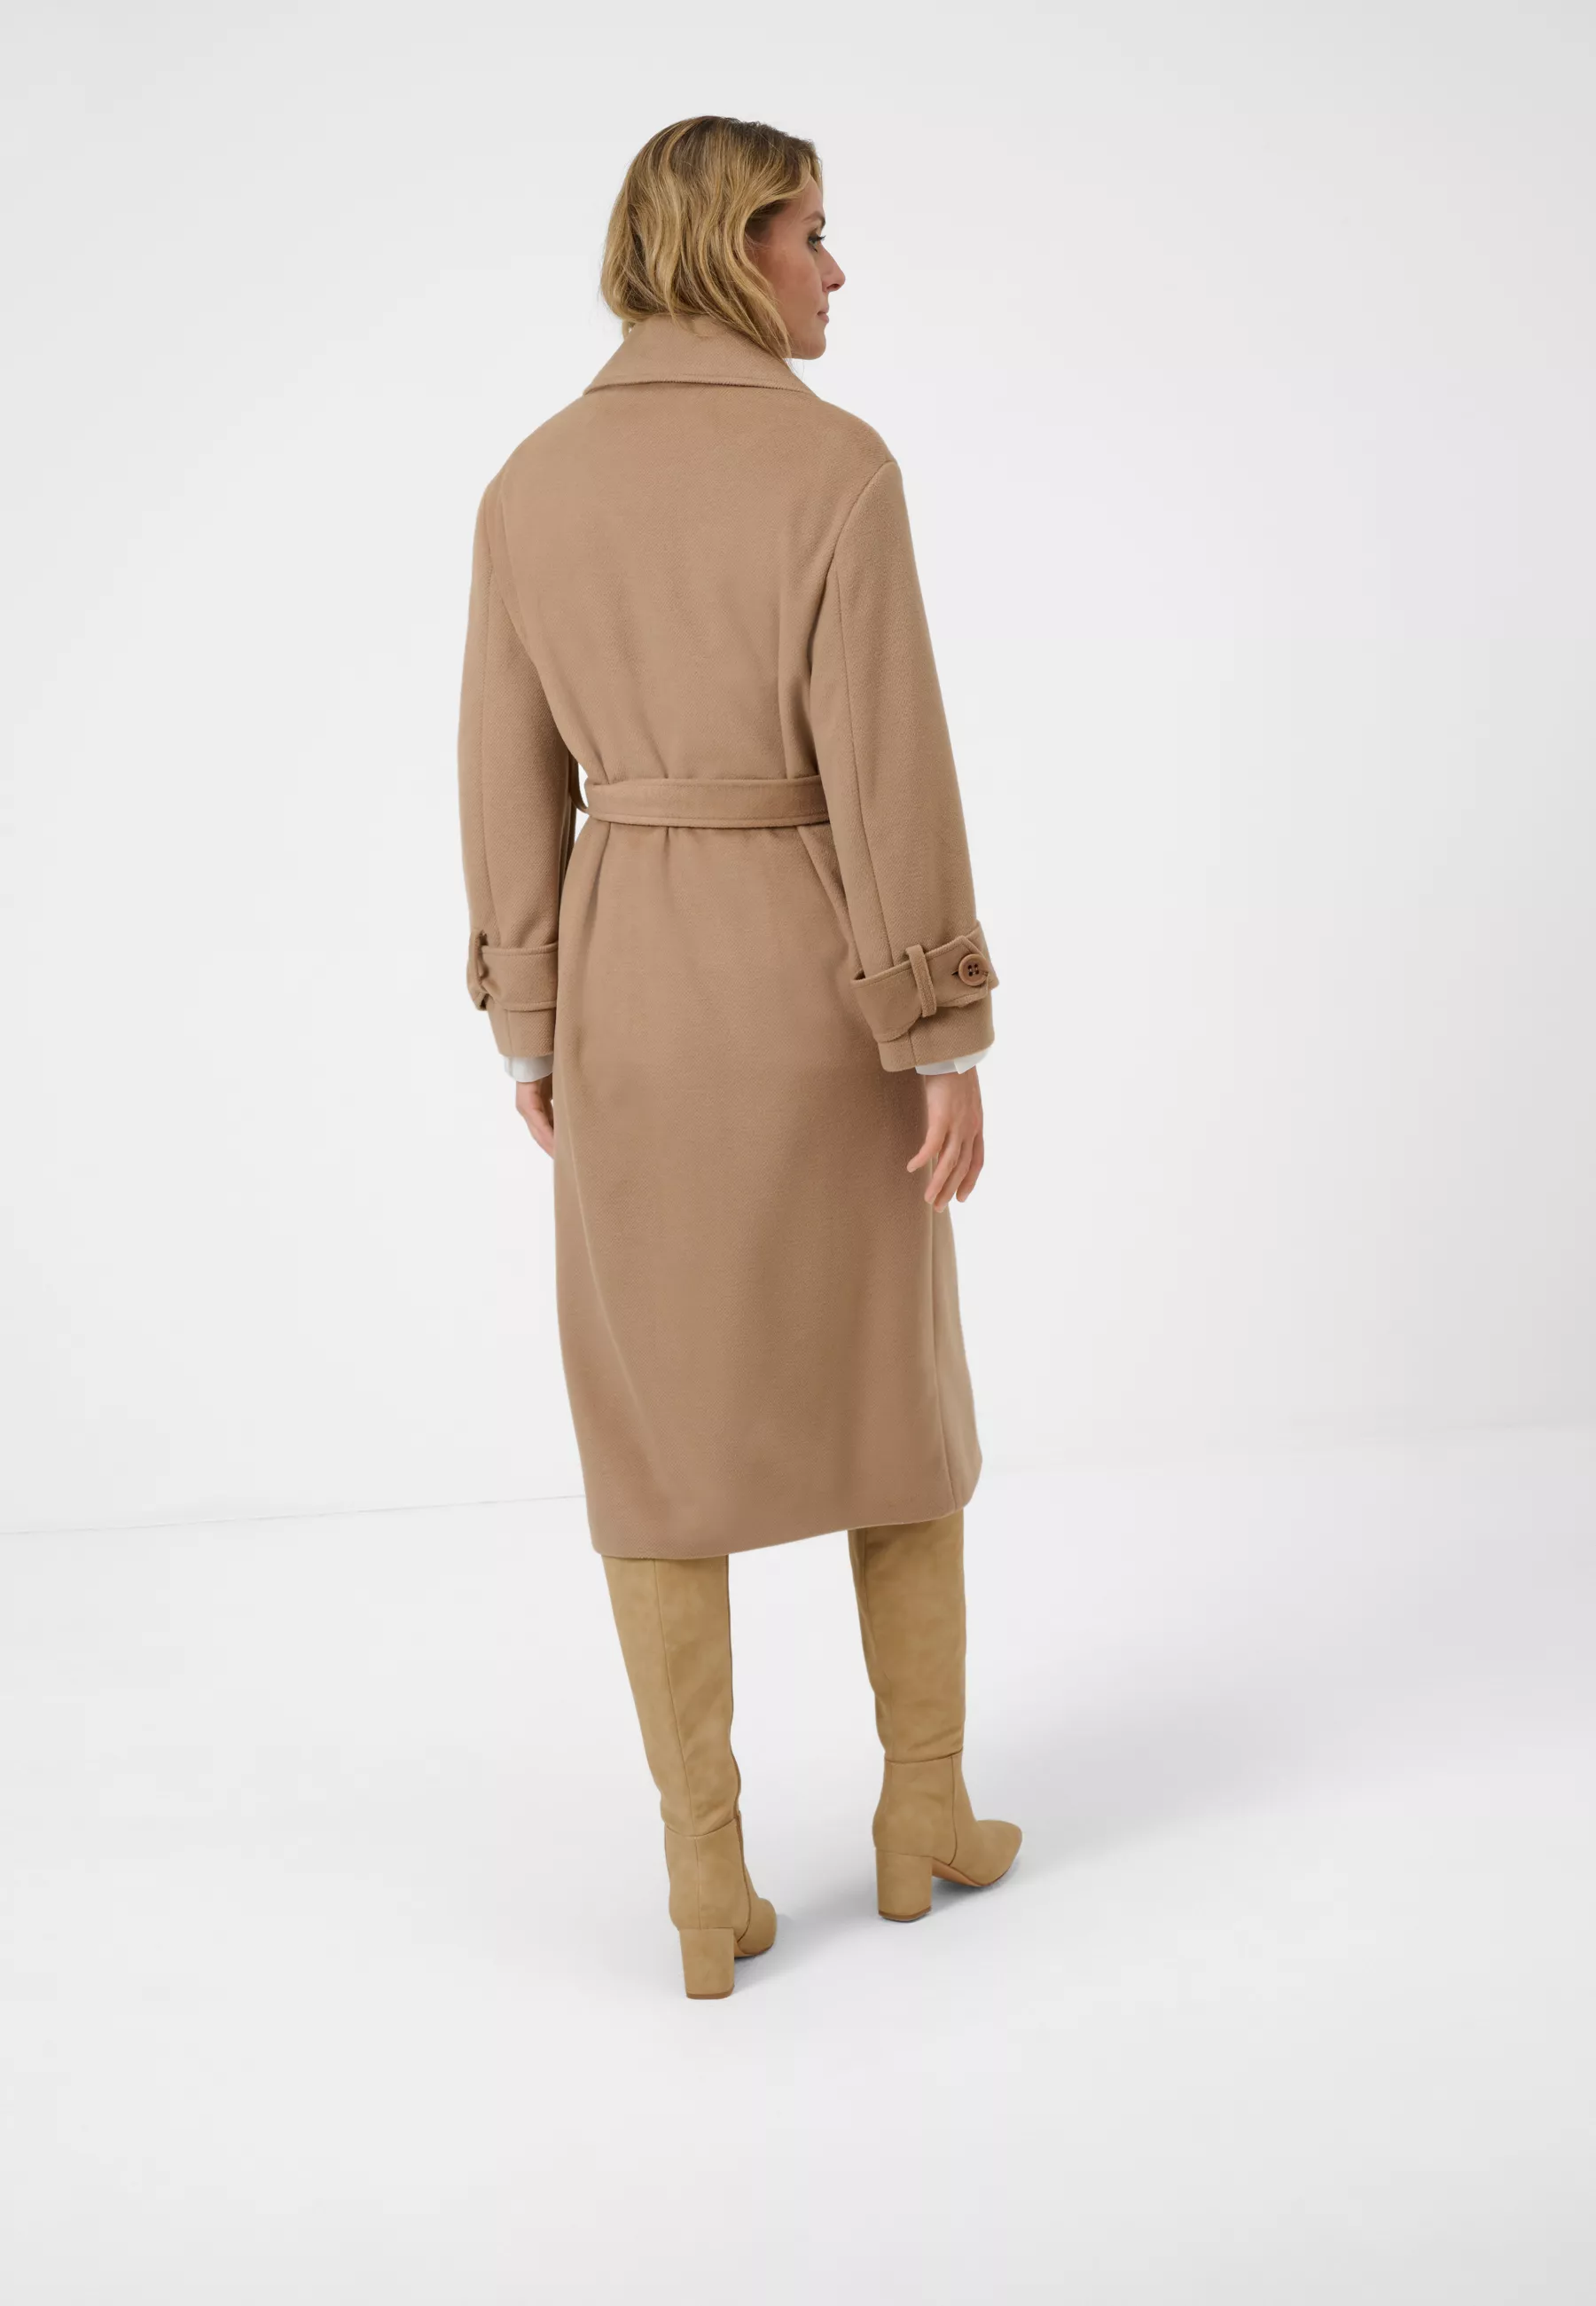 Damen Textil Mantel Selma in Camel von Ricano, Rückenansicht am Model